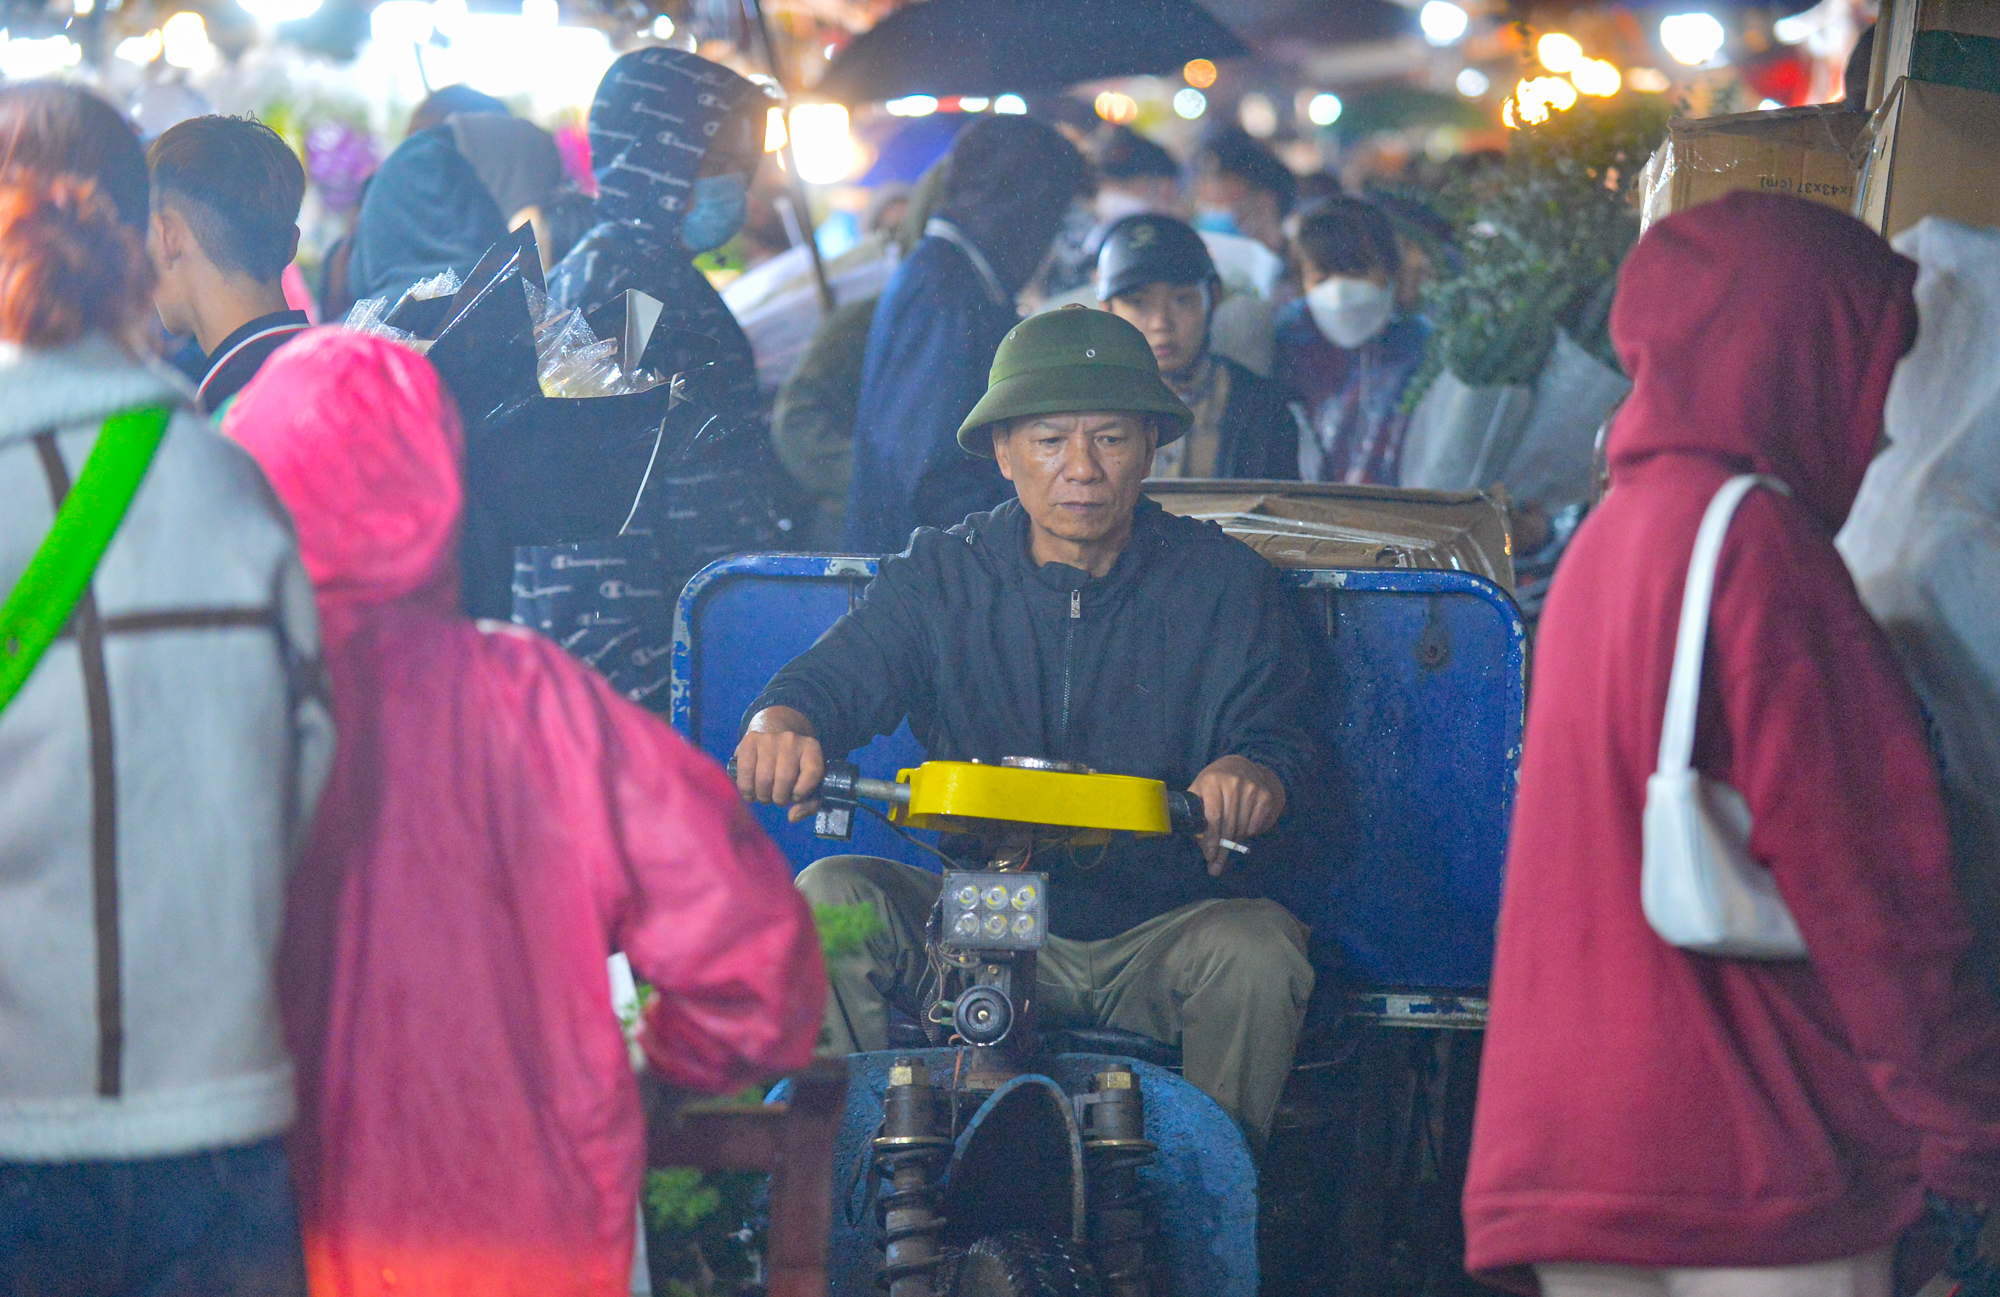 Ảnh: Mặc áo mưa, đội ô đi chợ hoa đêm lớn nhất miền Bắc trước ngày Phụ nữ Việt Nam 20/10, nhiều người co ro vì lạnh - Ảnh 6.